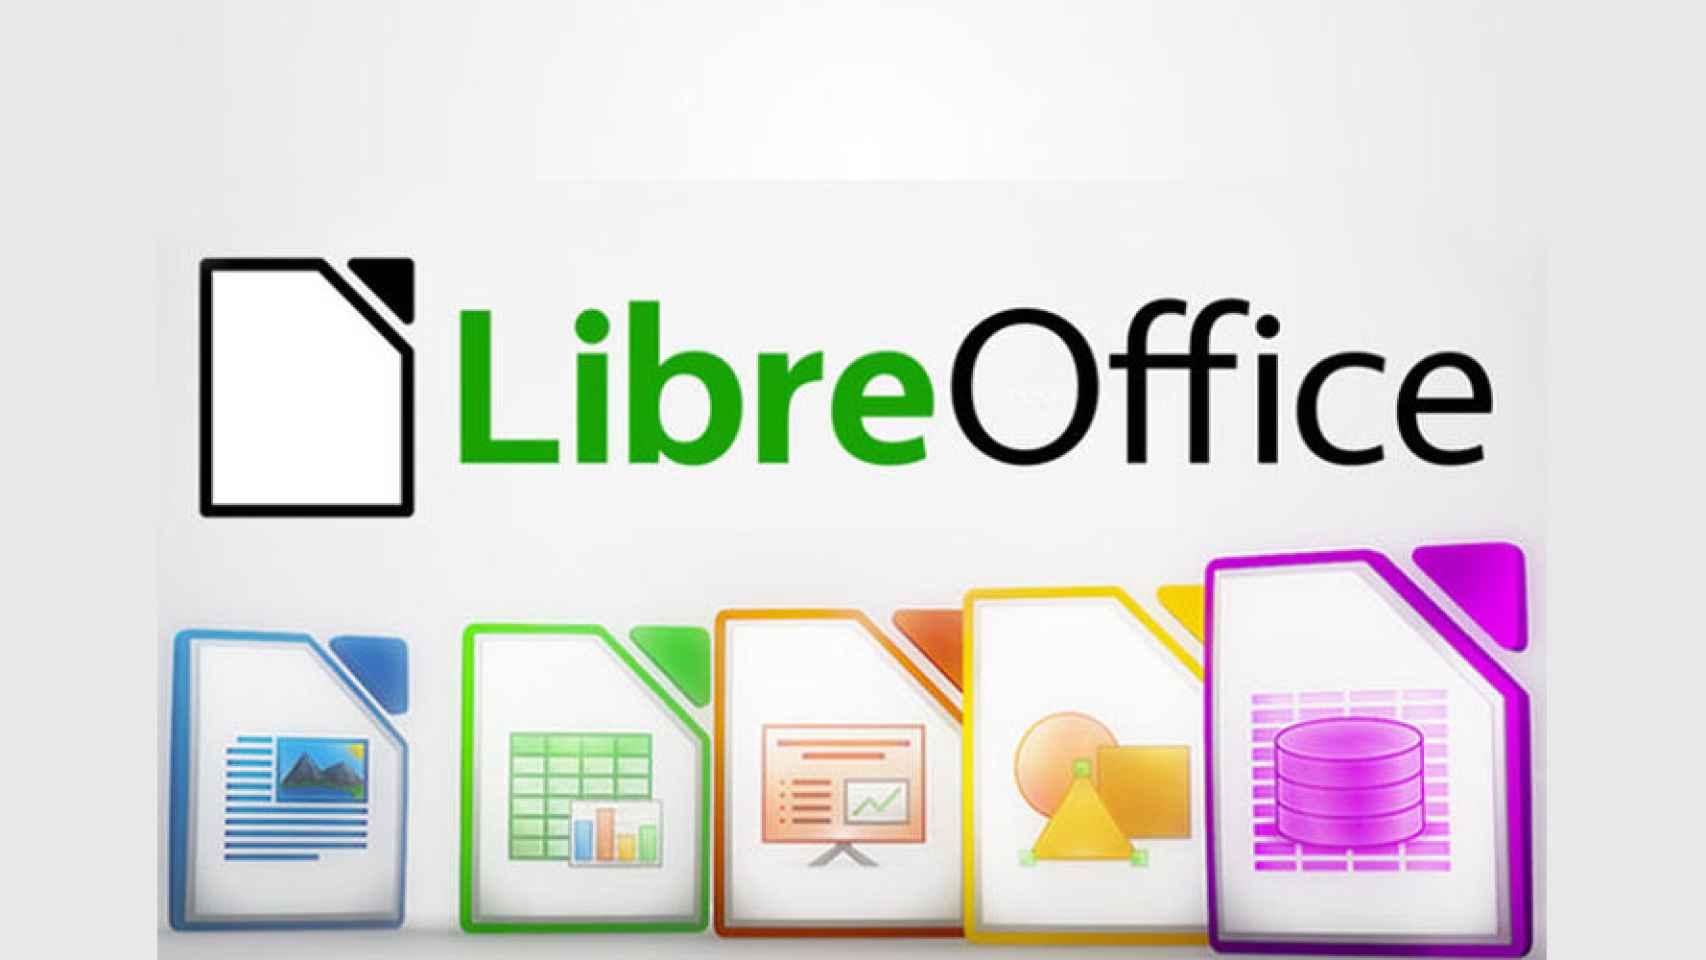 | LibreOffice
| N